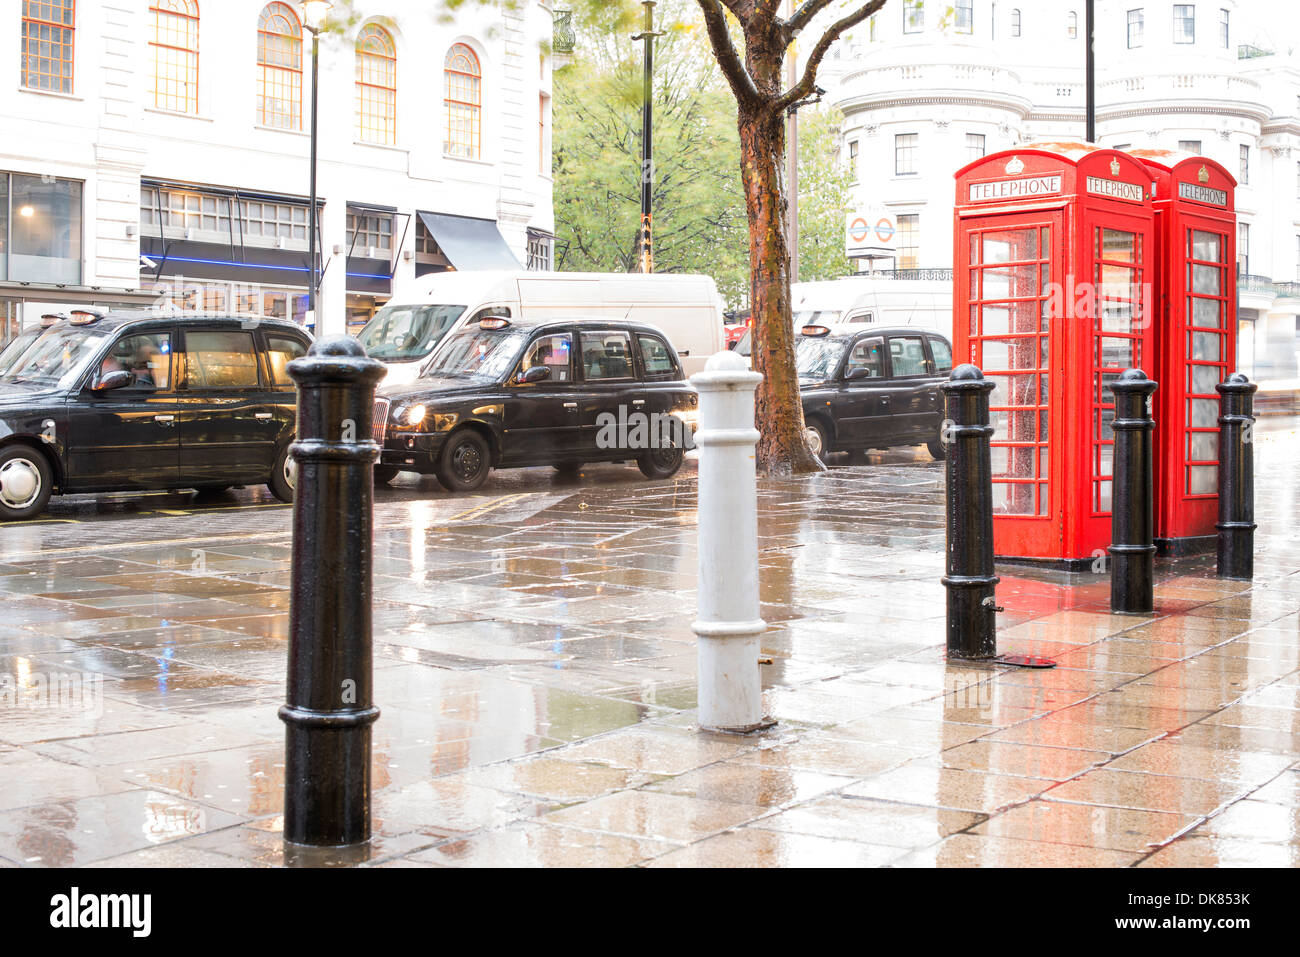 Fiche détaillée Téléphone rouge à Londres et vintage taxi.jour de pluie. Téléphone Vintage monumental cabine Banque D'Images